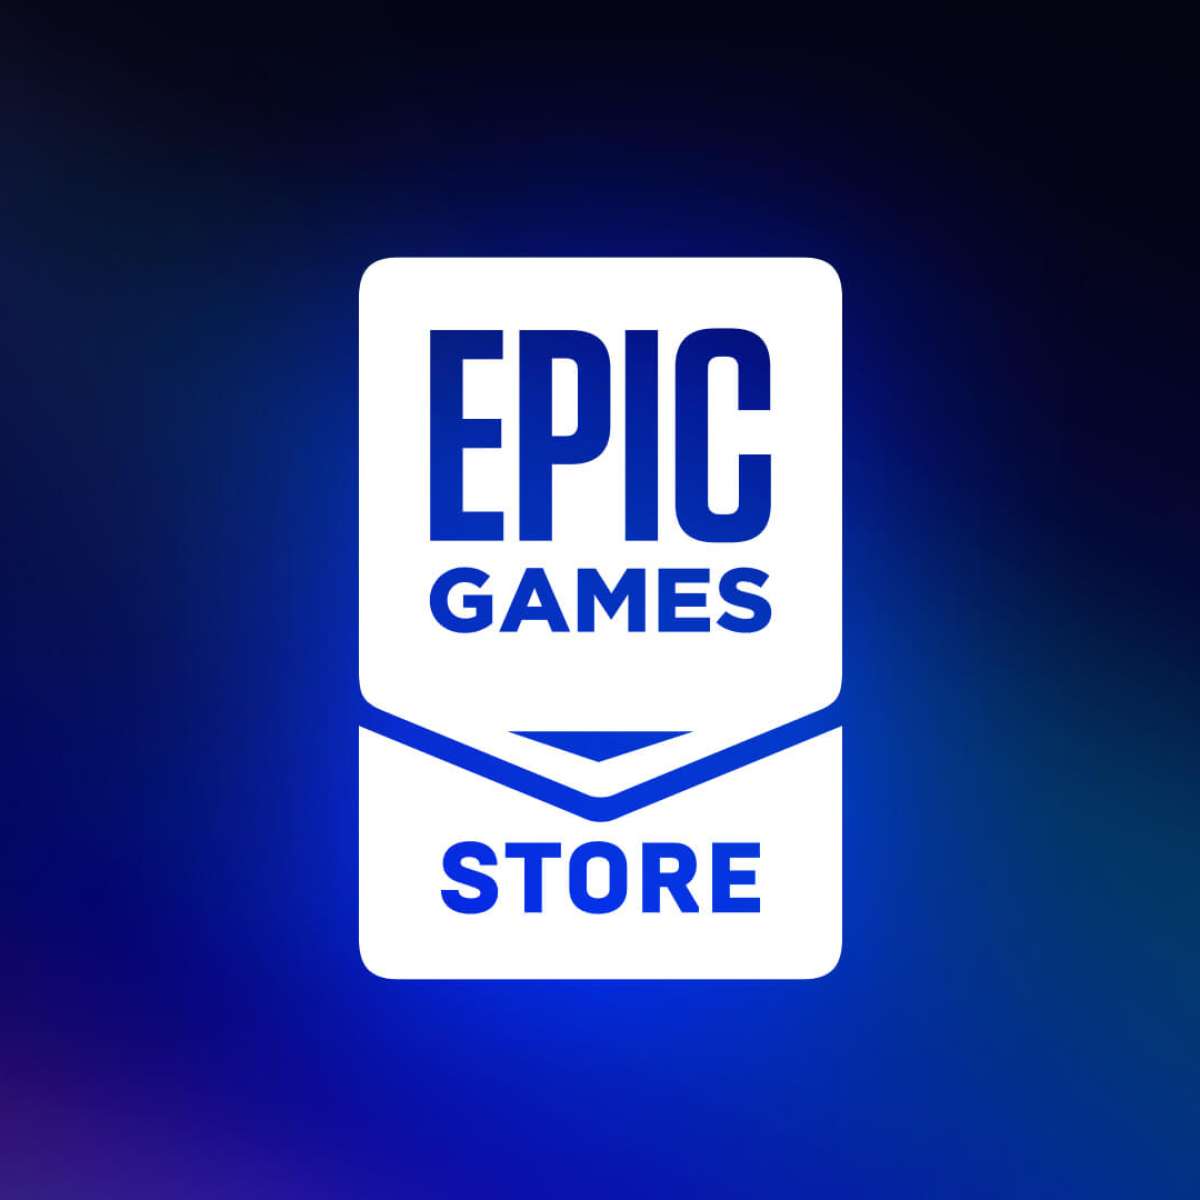 Epic Games libera jogo grátis nesta quinta (11) e promete surpresa